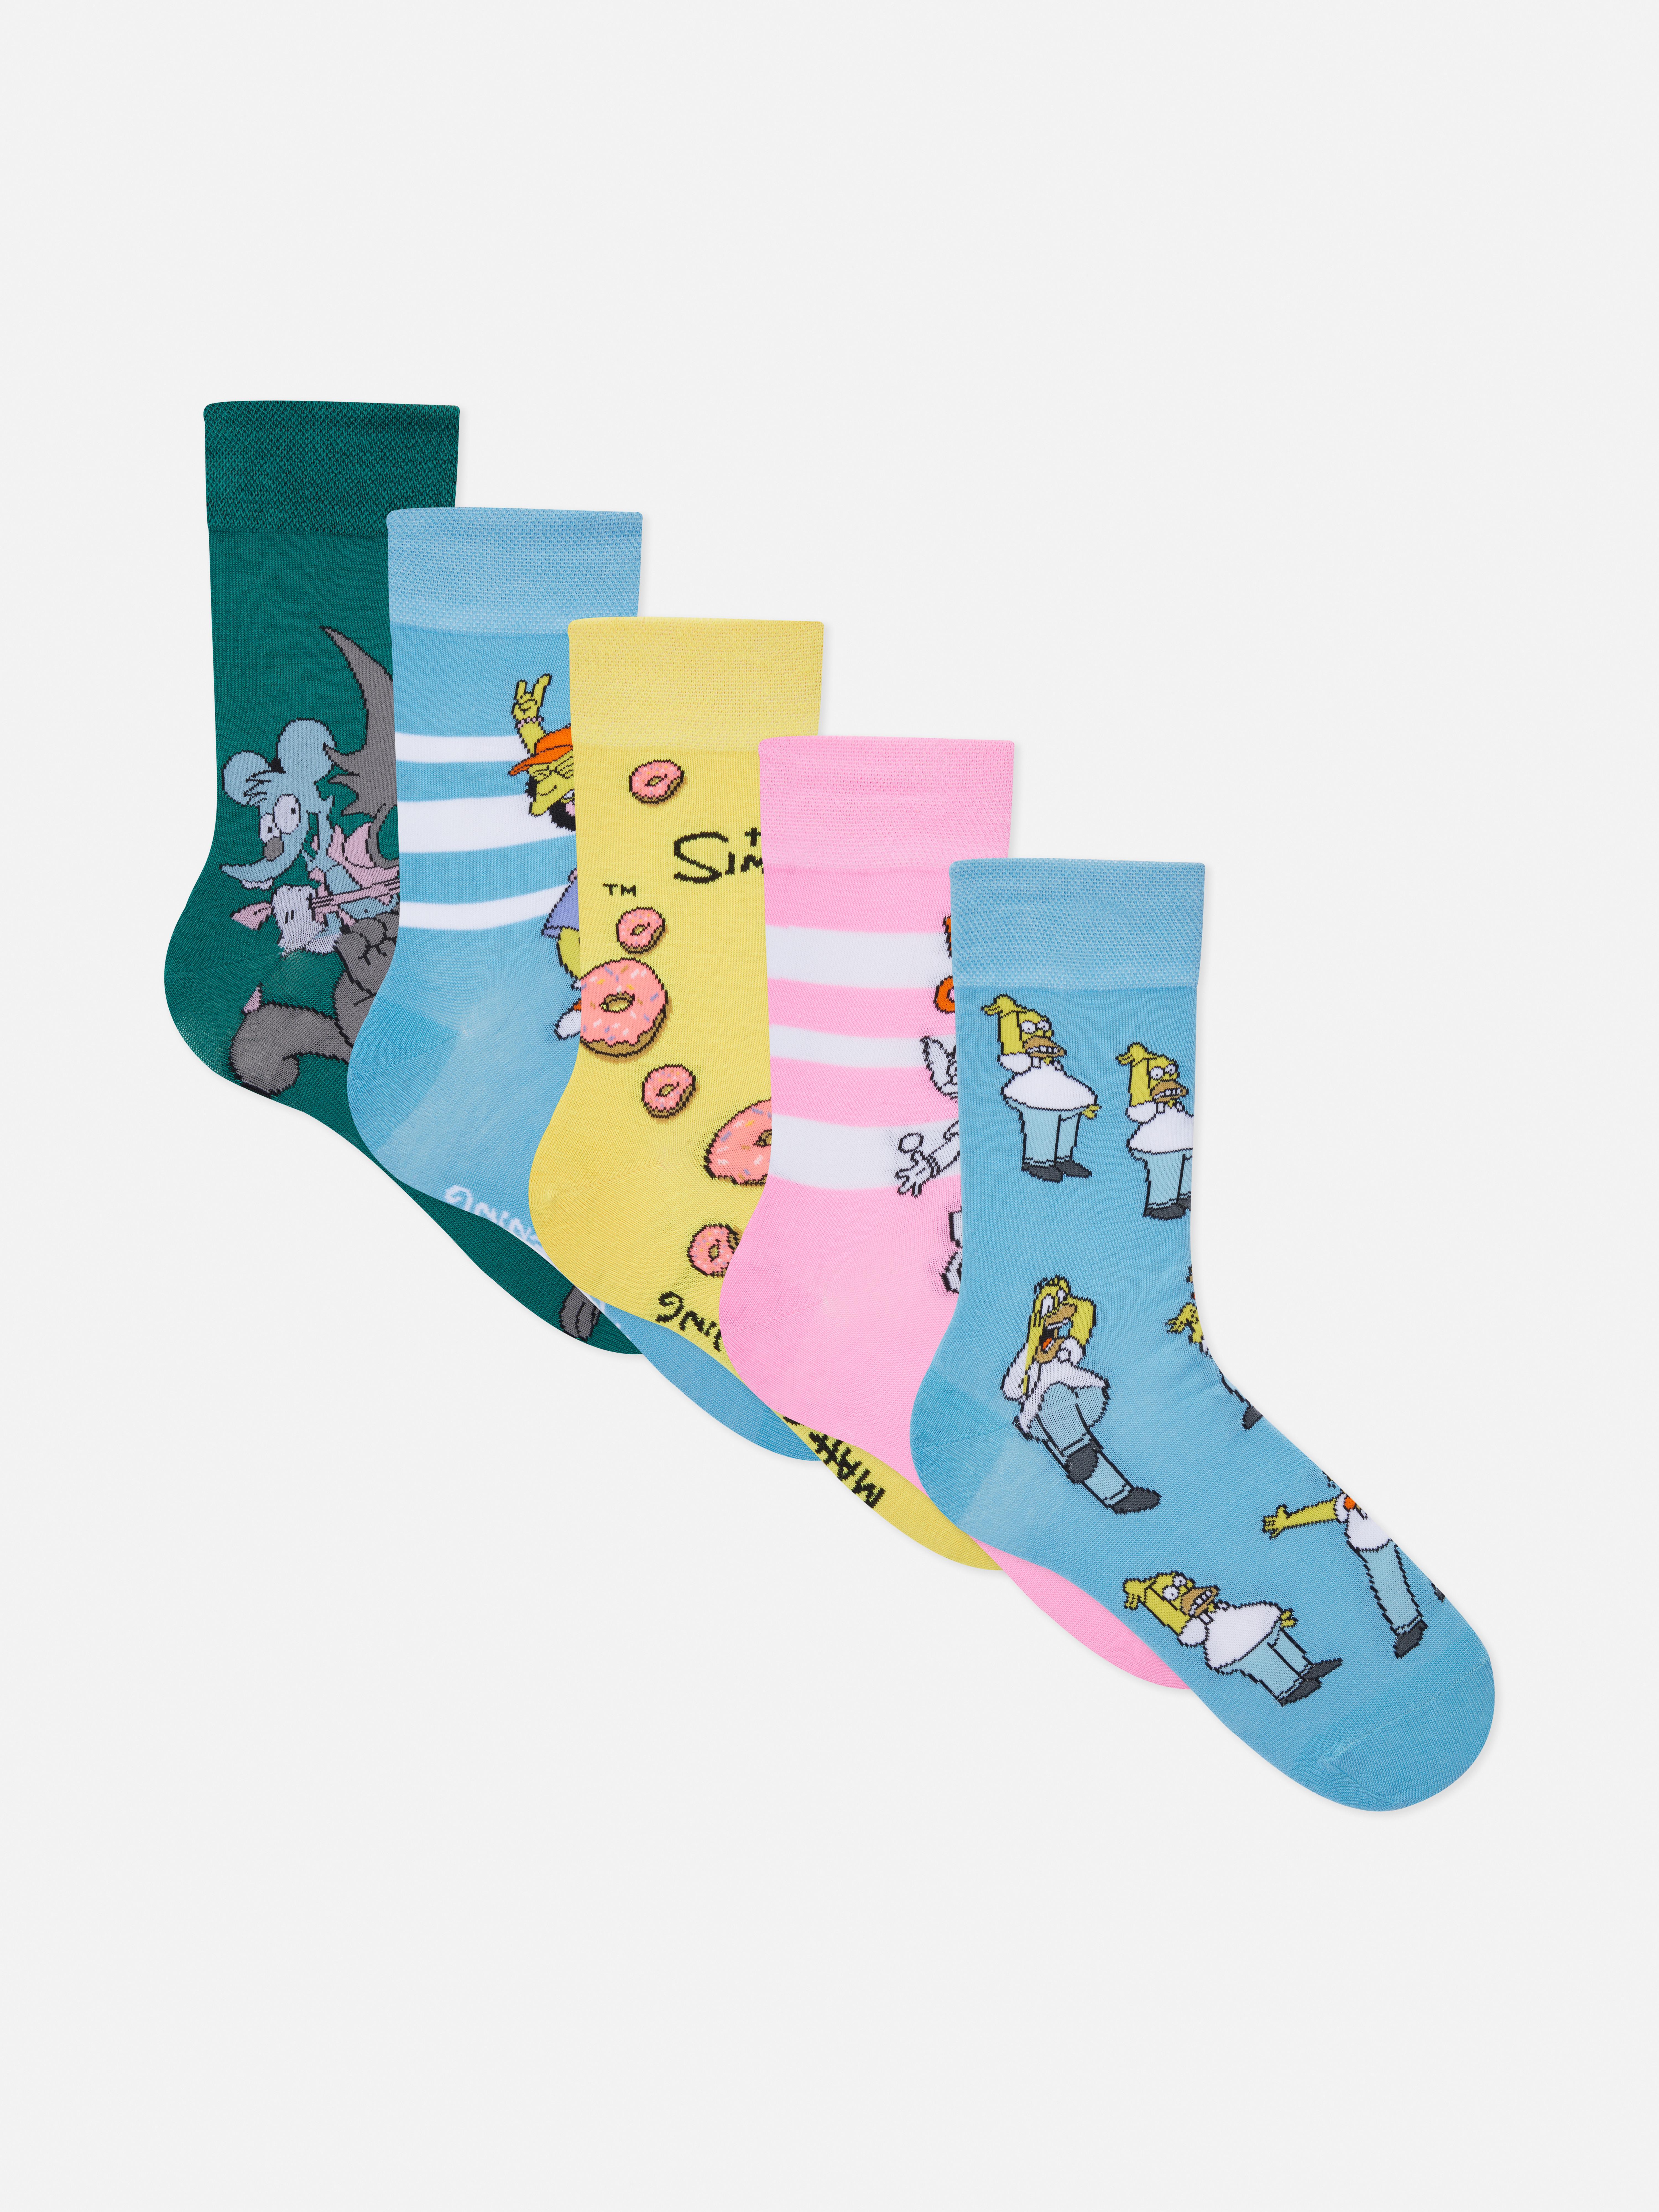 Precursor Esperar algo Intenso Pack de 5 pares de calcetines con los personajes de The Simpsons | Primark